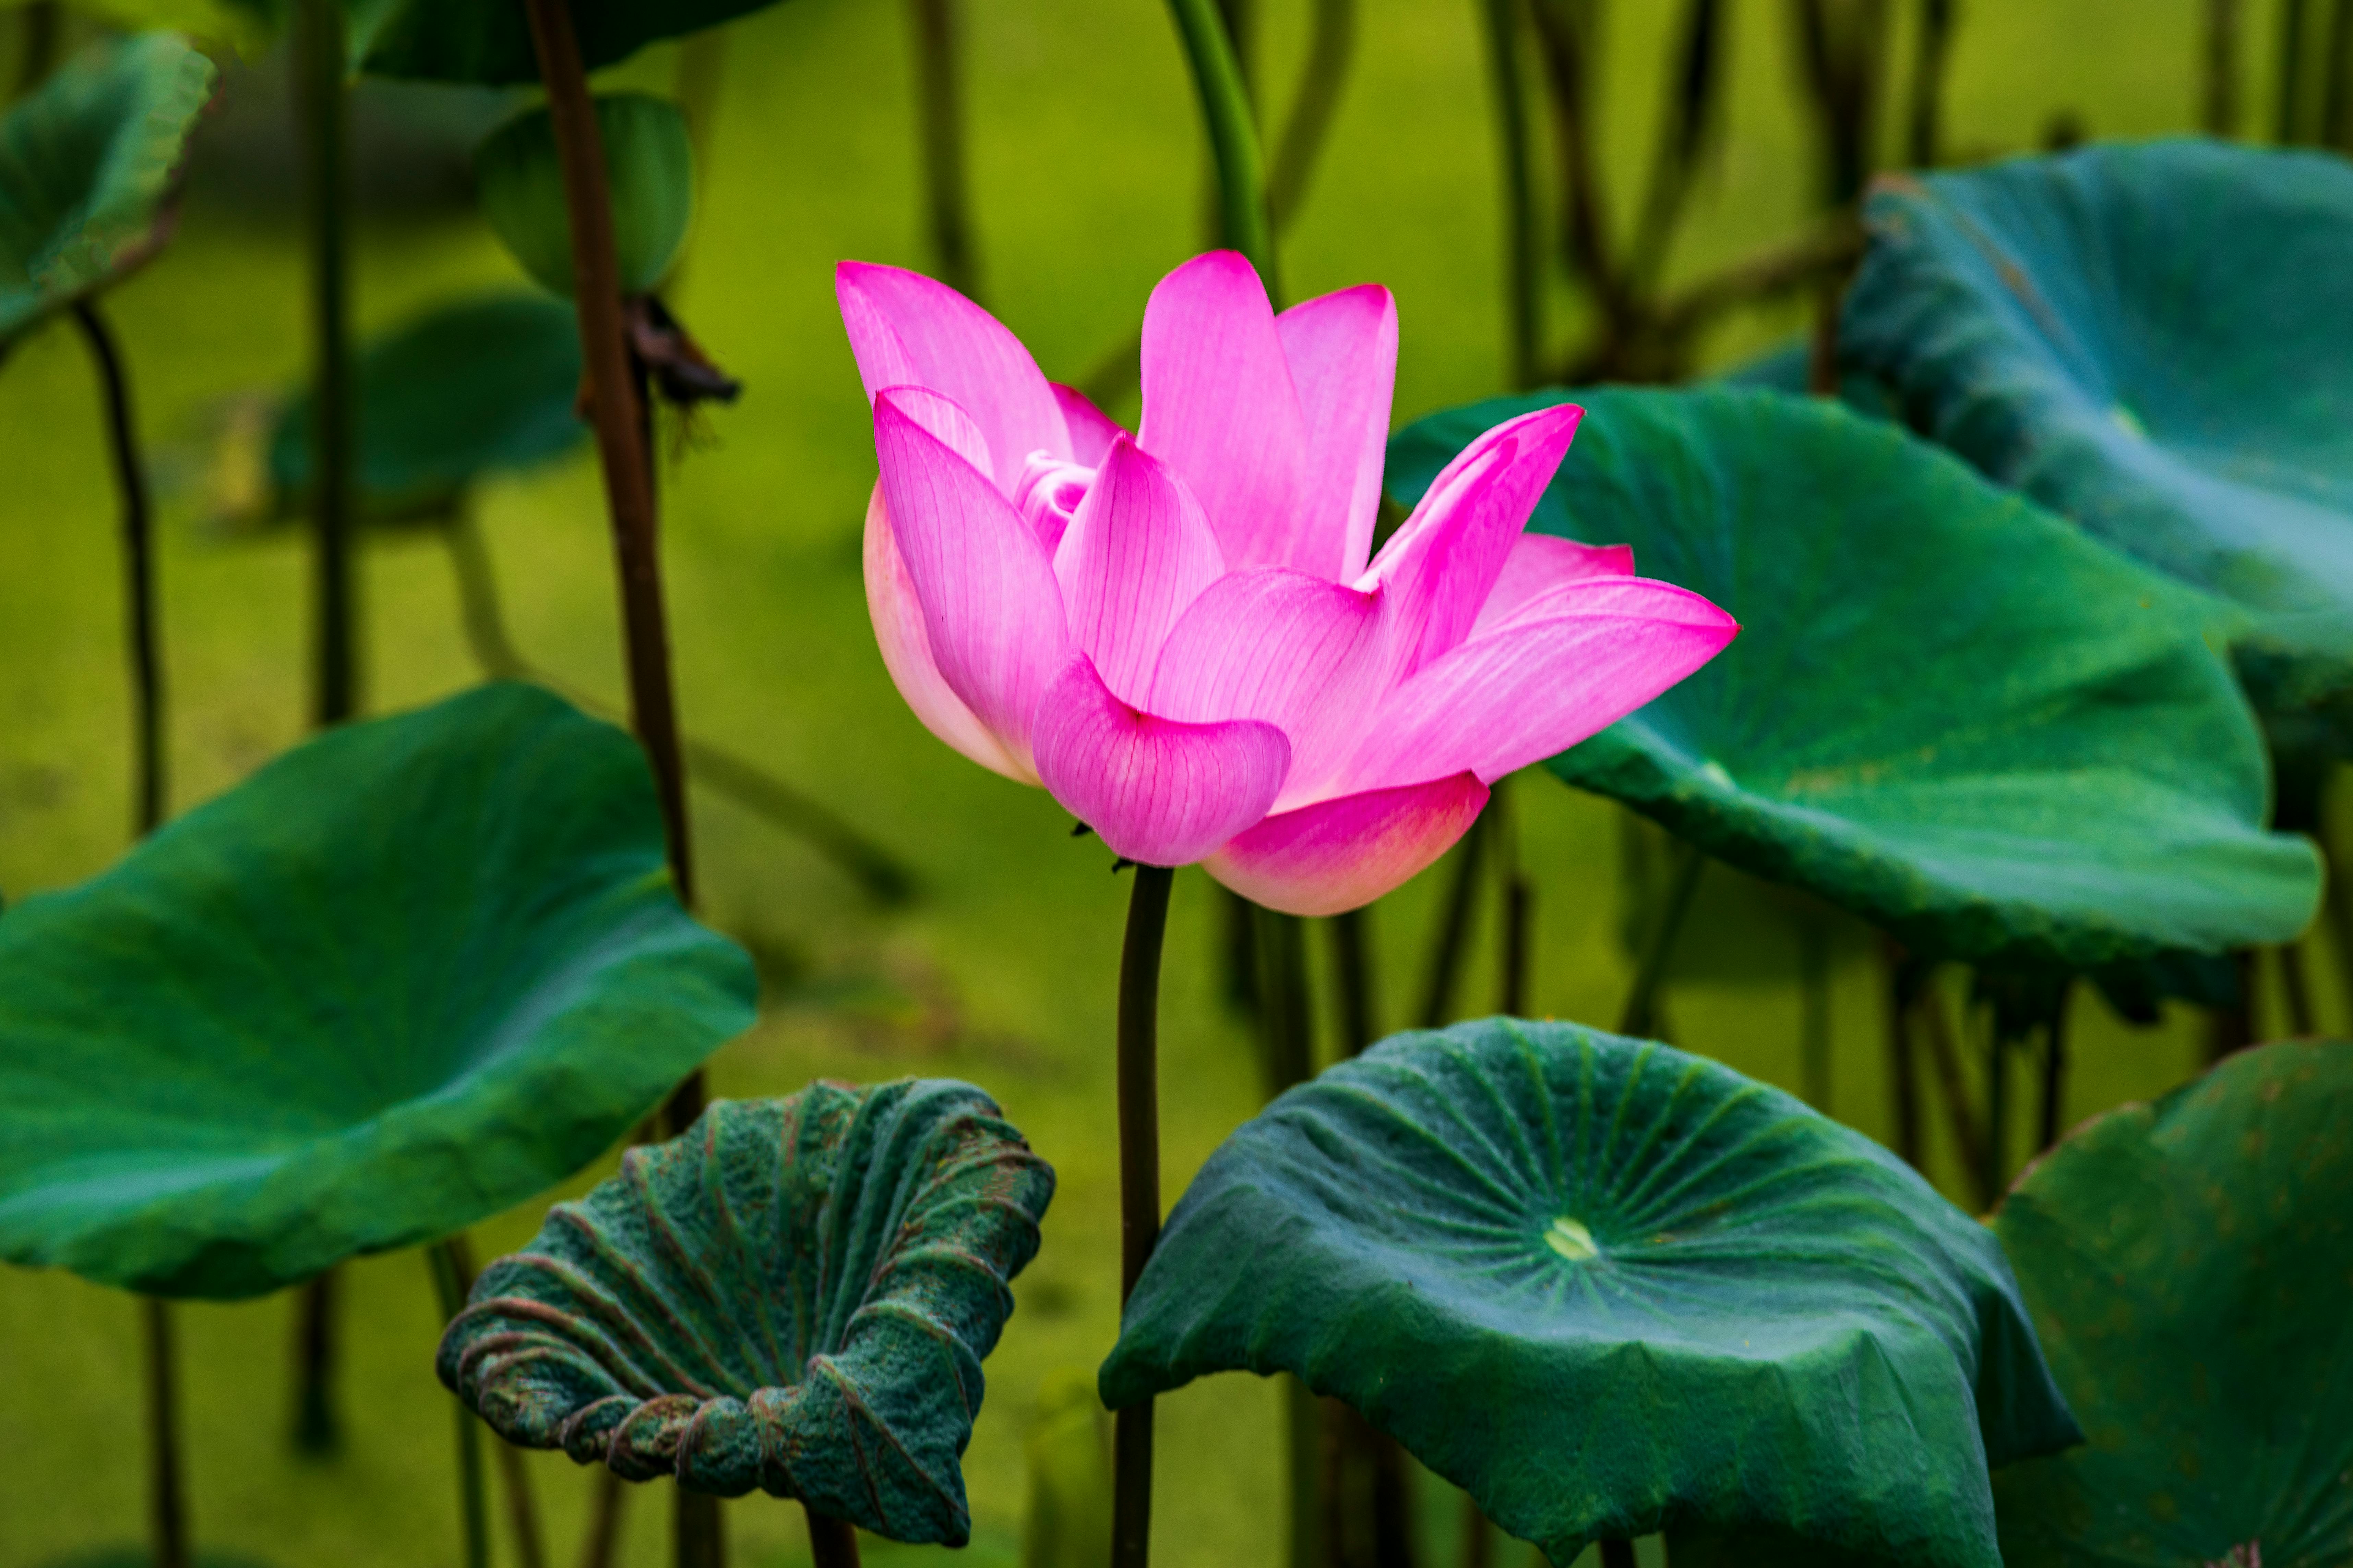 Hãy chiêm ngưỡng vẻ đẹp tỏa sáng của hoa sen trên hồ nước trong tranh ảnh này. Với những cánh hoa nhập nhất vào khuôn mặt nước, chúng ta sẽ cảm nhận được sự thanh tịnh và tâm linh của loài hoa thiêng liêng này.